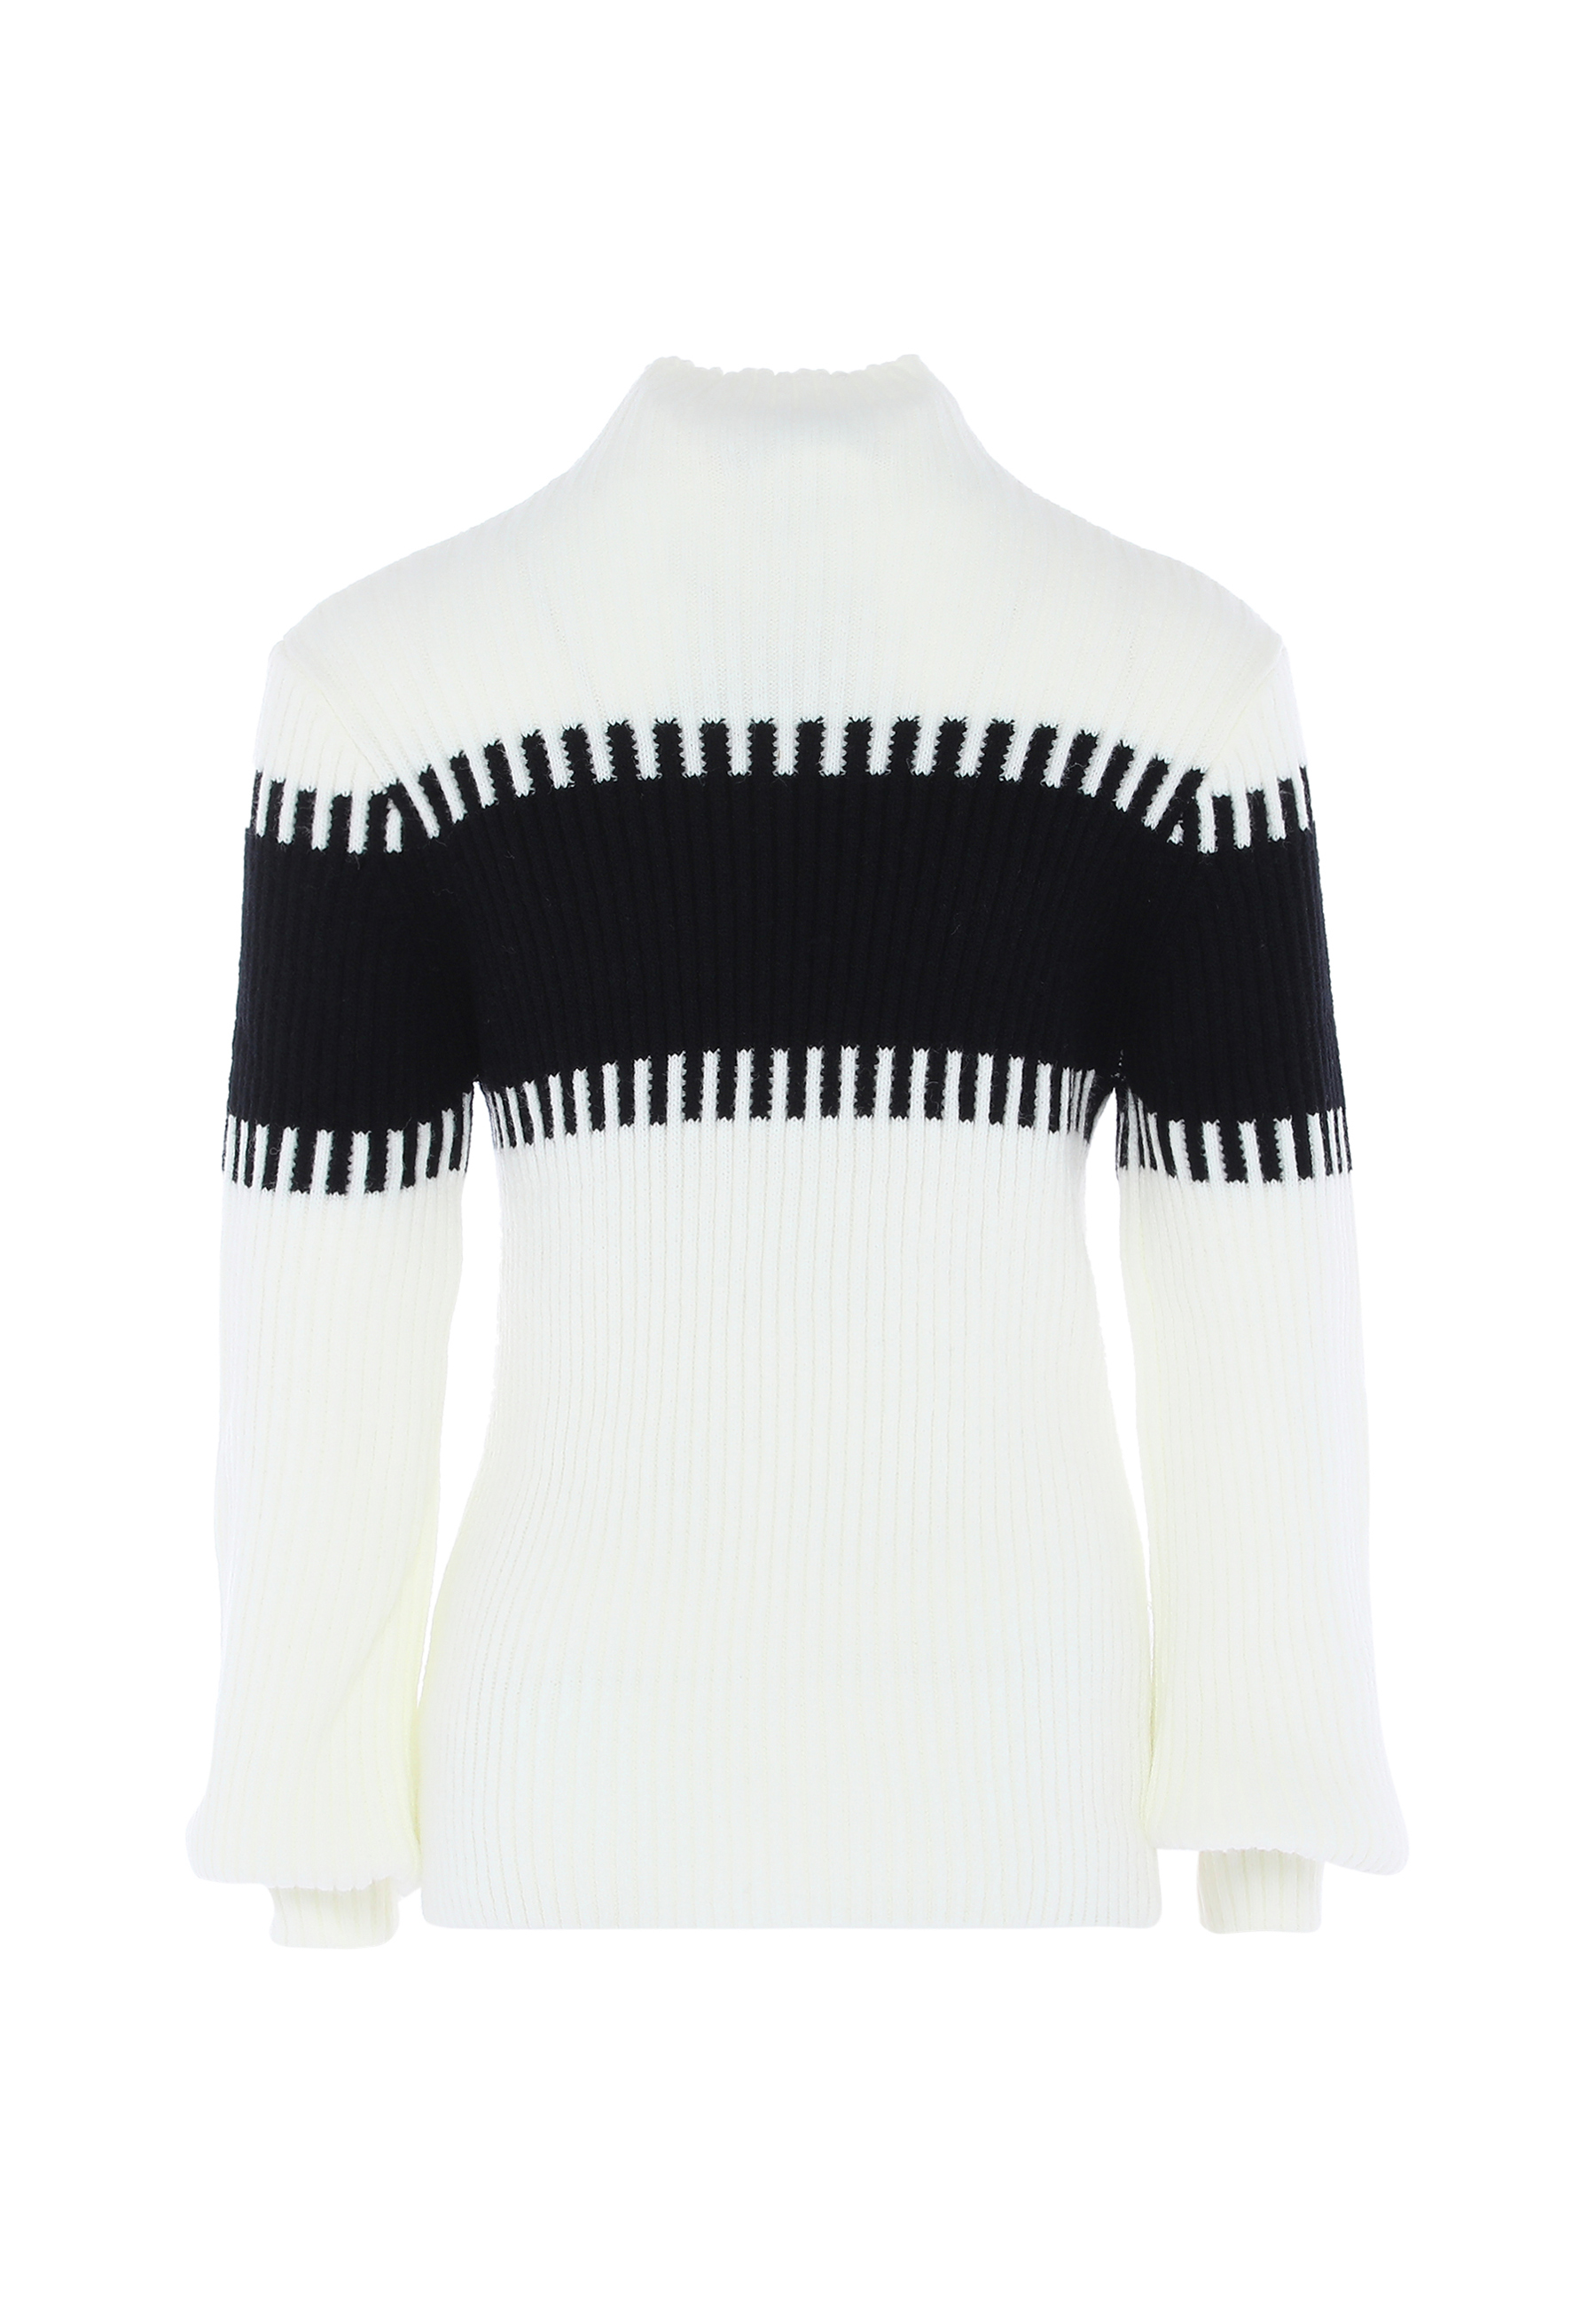 Свитер FENIA Sweater, белый черный свитер fenia sweater белый